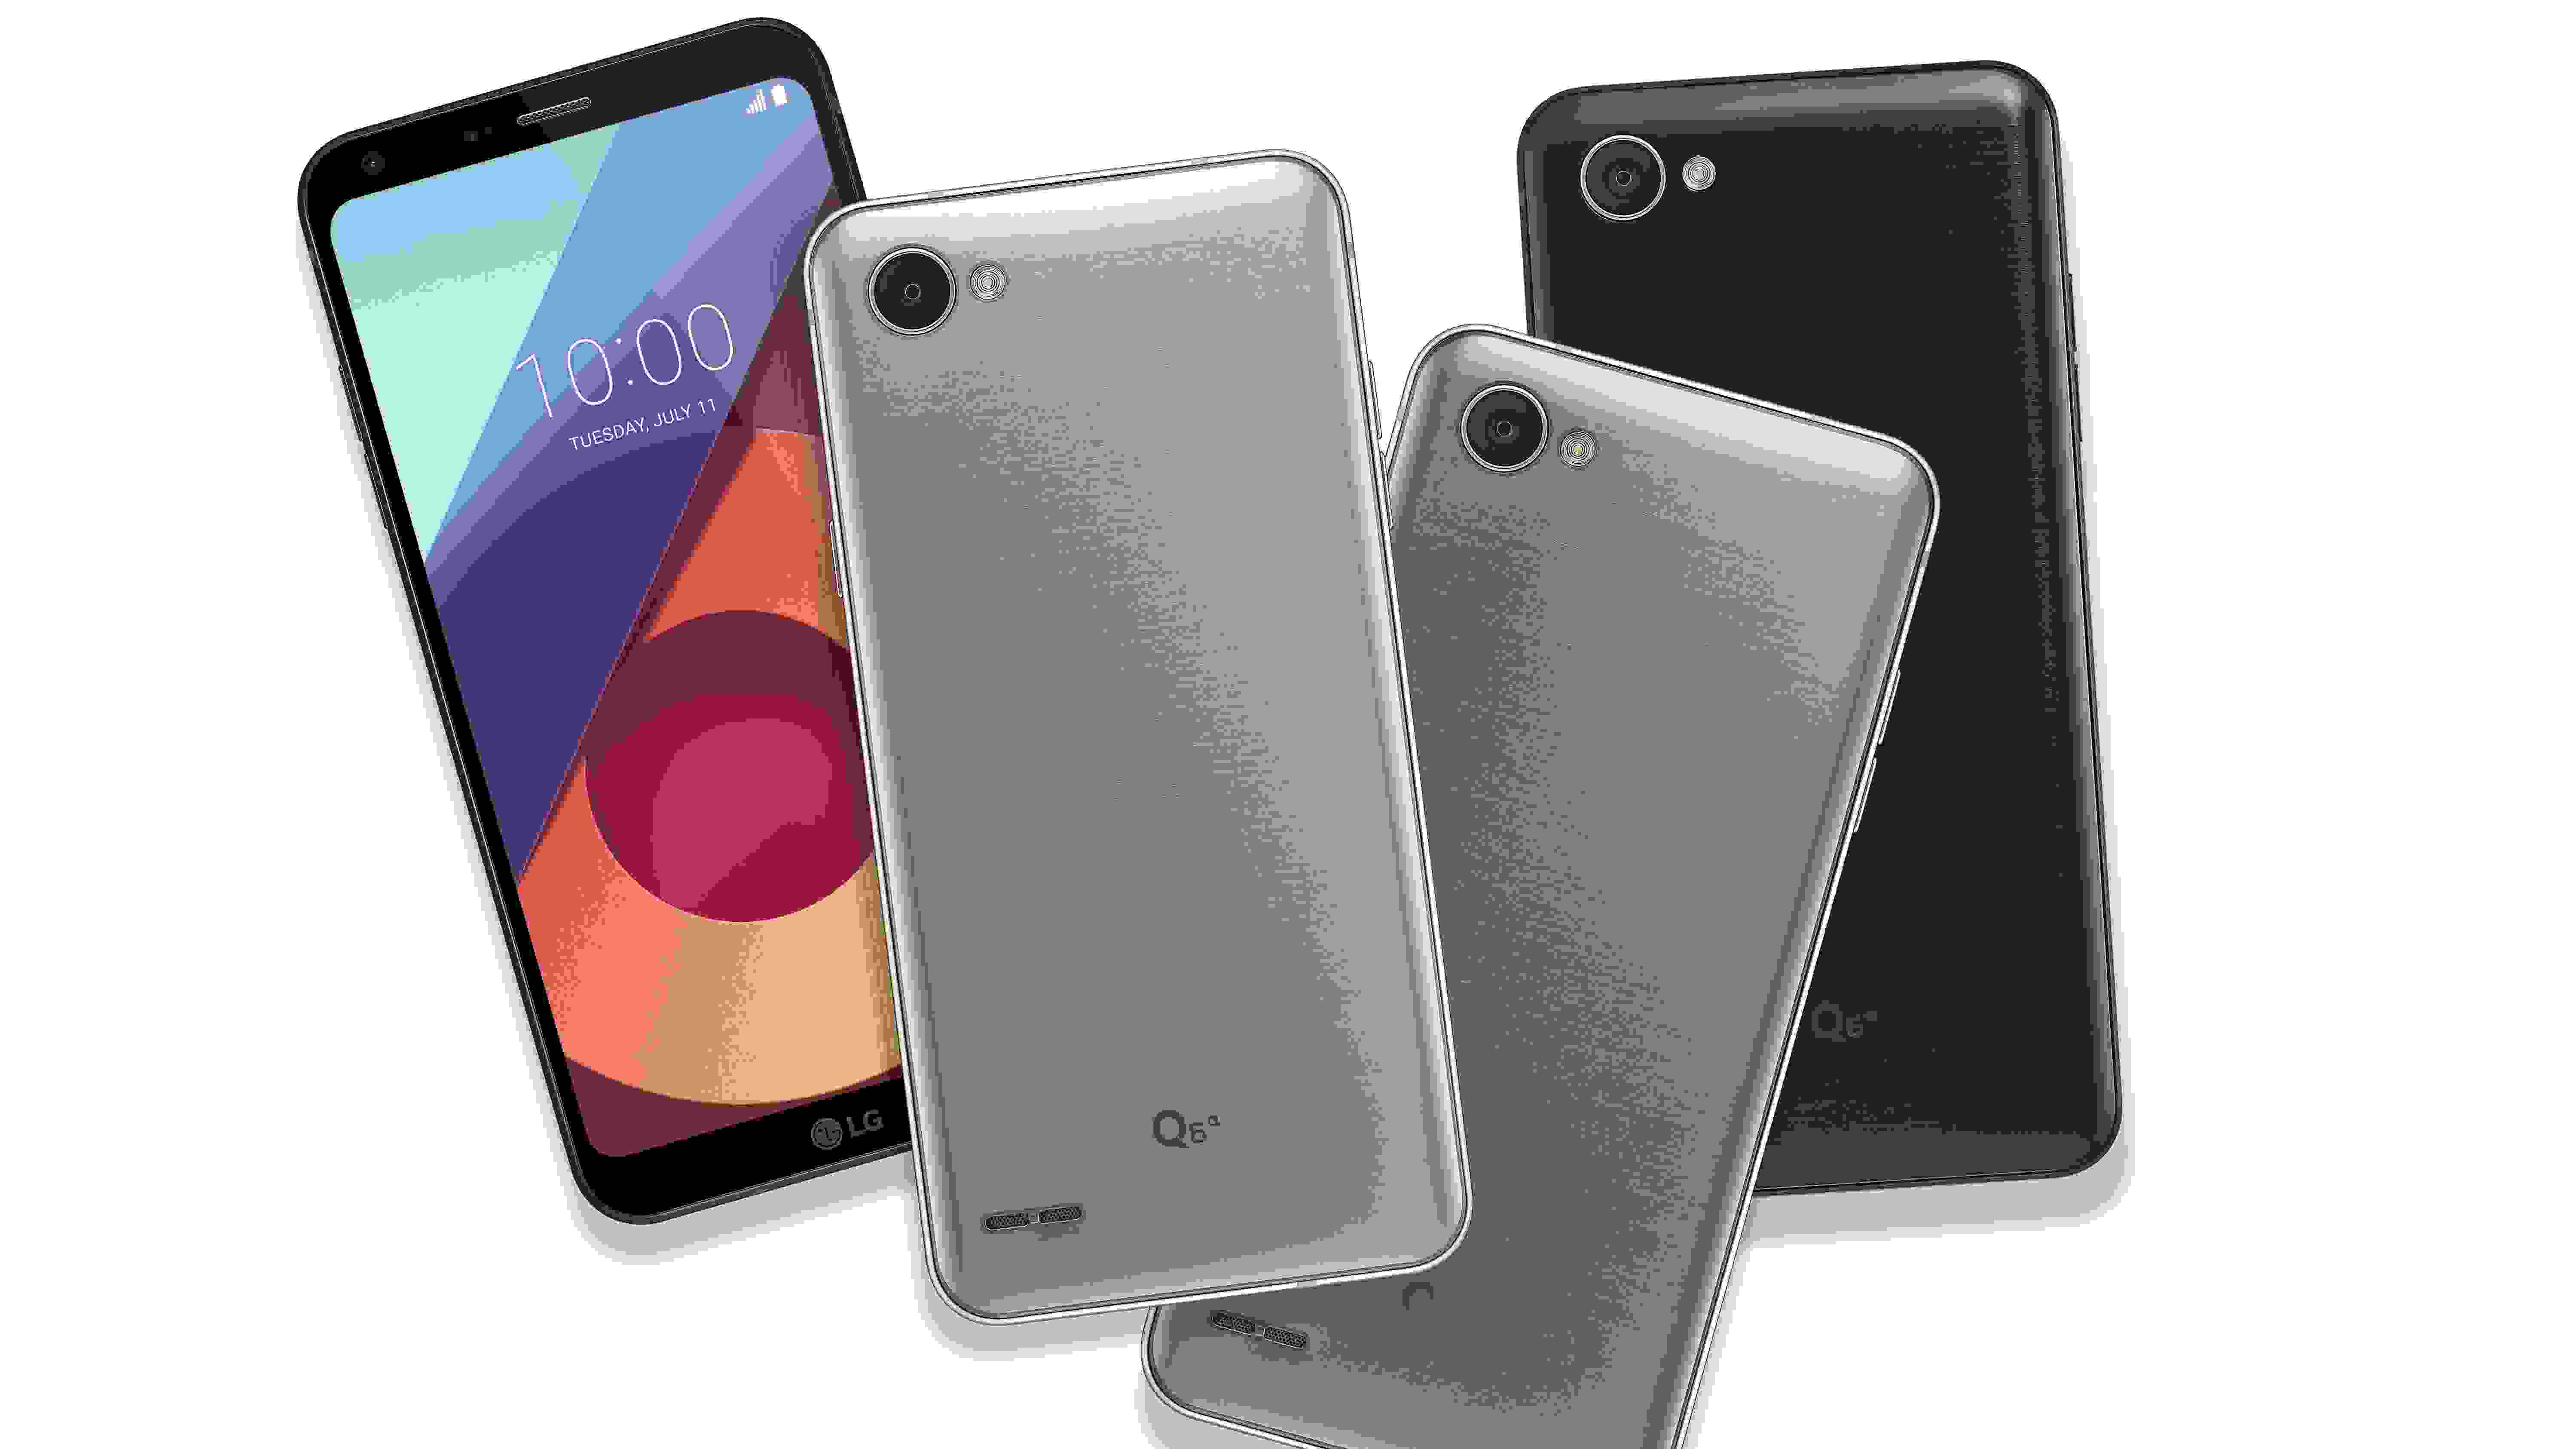 LG показала новый смартфон Q6, причем сразу в трех версиях